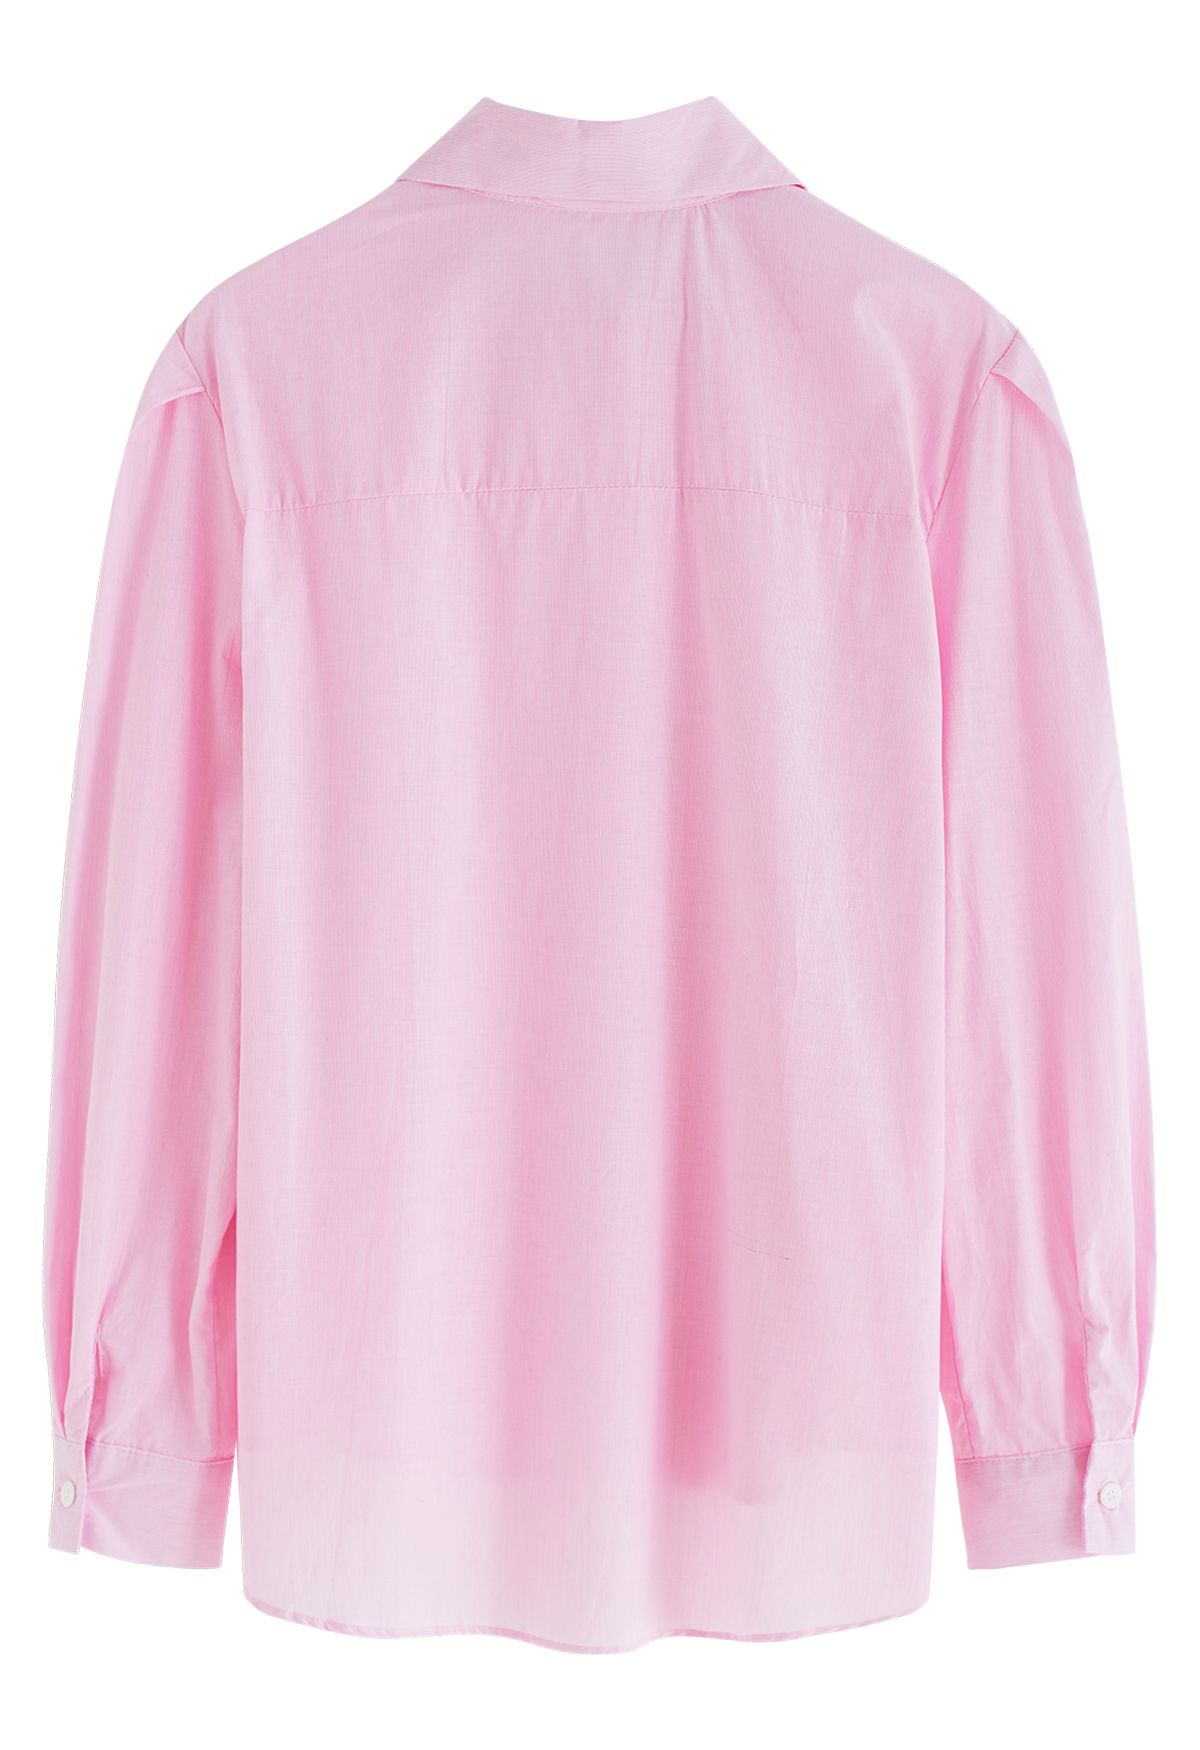 Camisa de manga burbuja de algodón a rayas diplomáticas en rosa